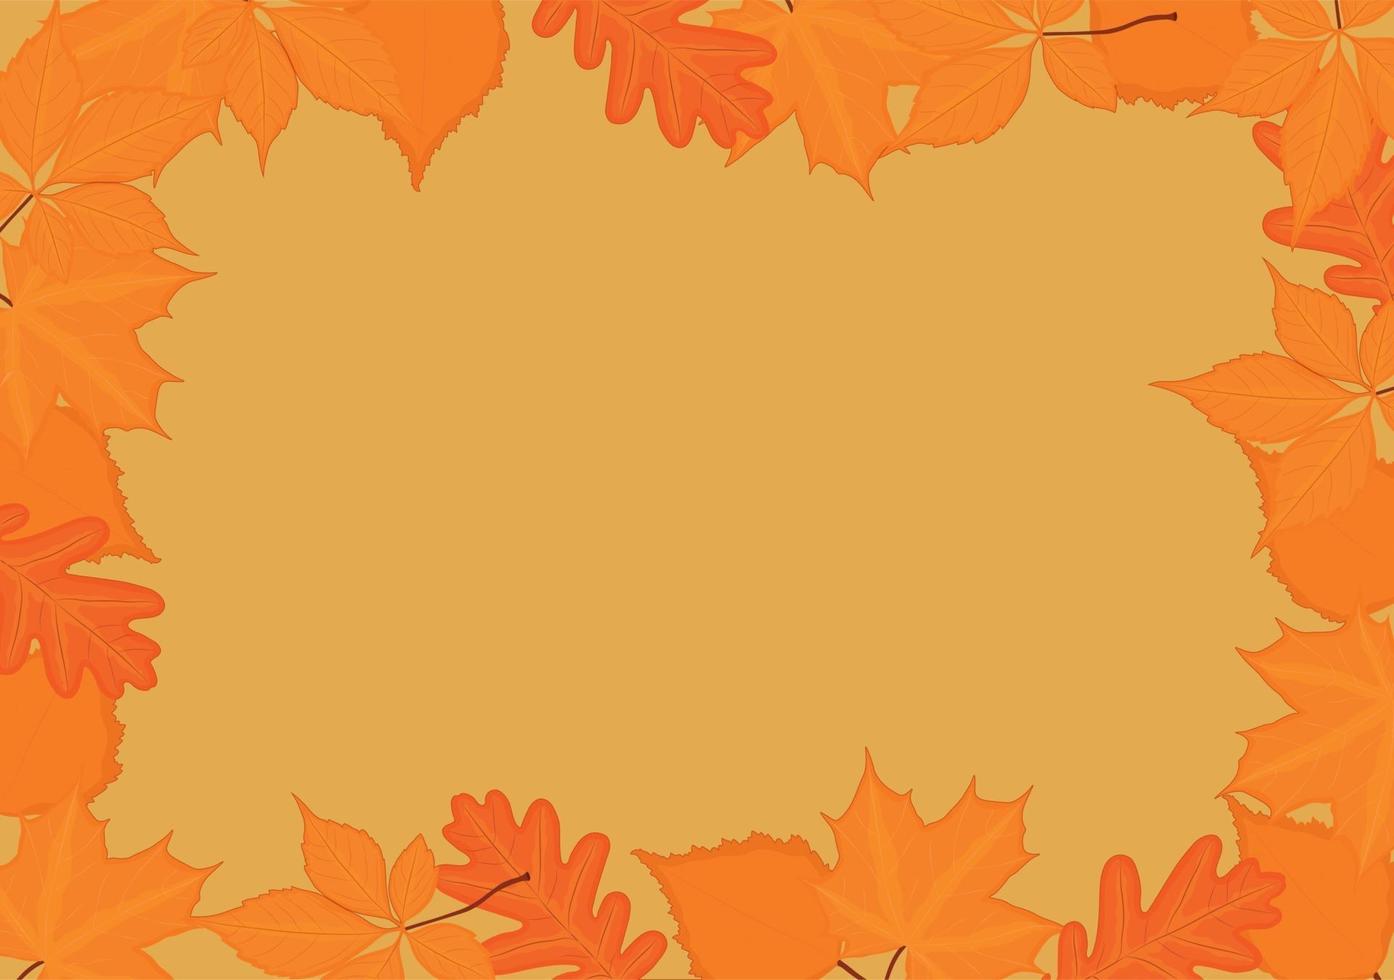 herfst herfst backgrond frame met gele rode bladeren vector illustratie